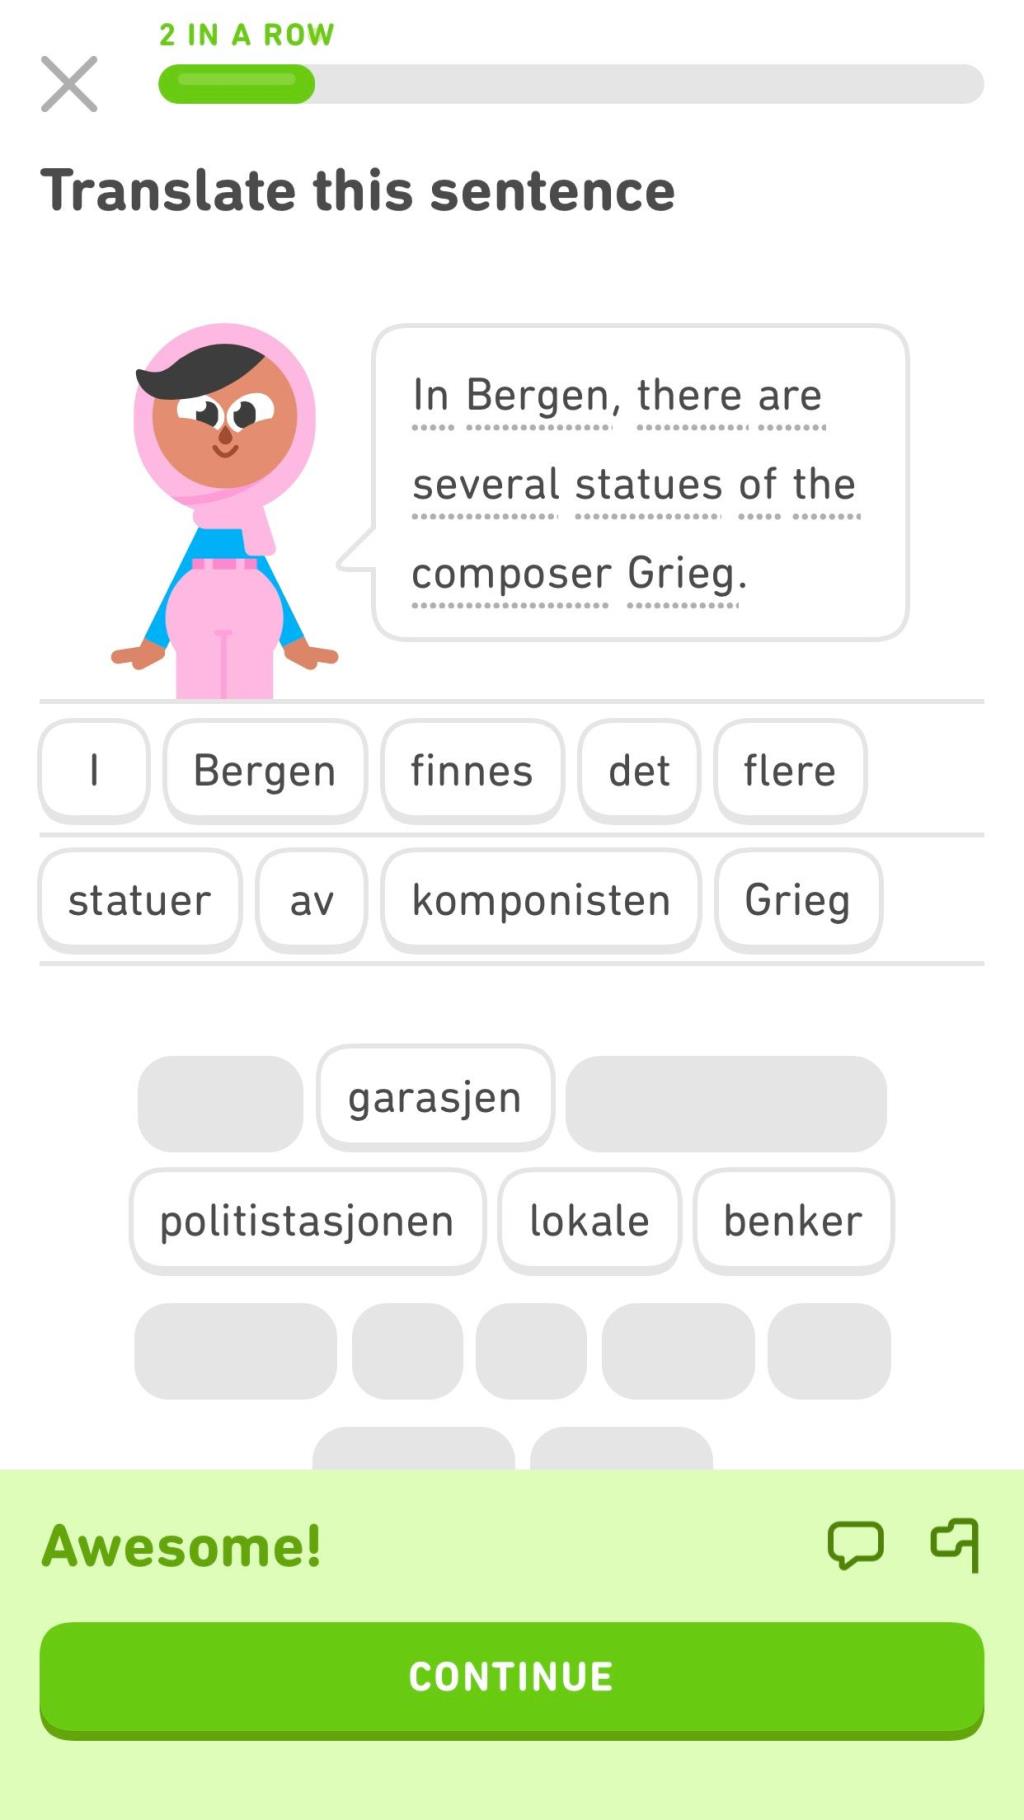 สร้าง Duolingo Tree เสร็จหรือยัง  10 วิธีในการเรียนรู้ต่อไปด้วย Duolingo